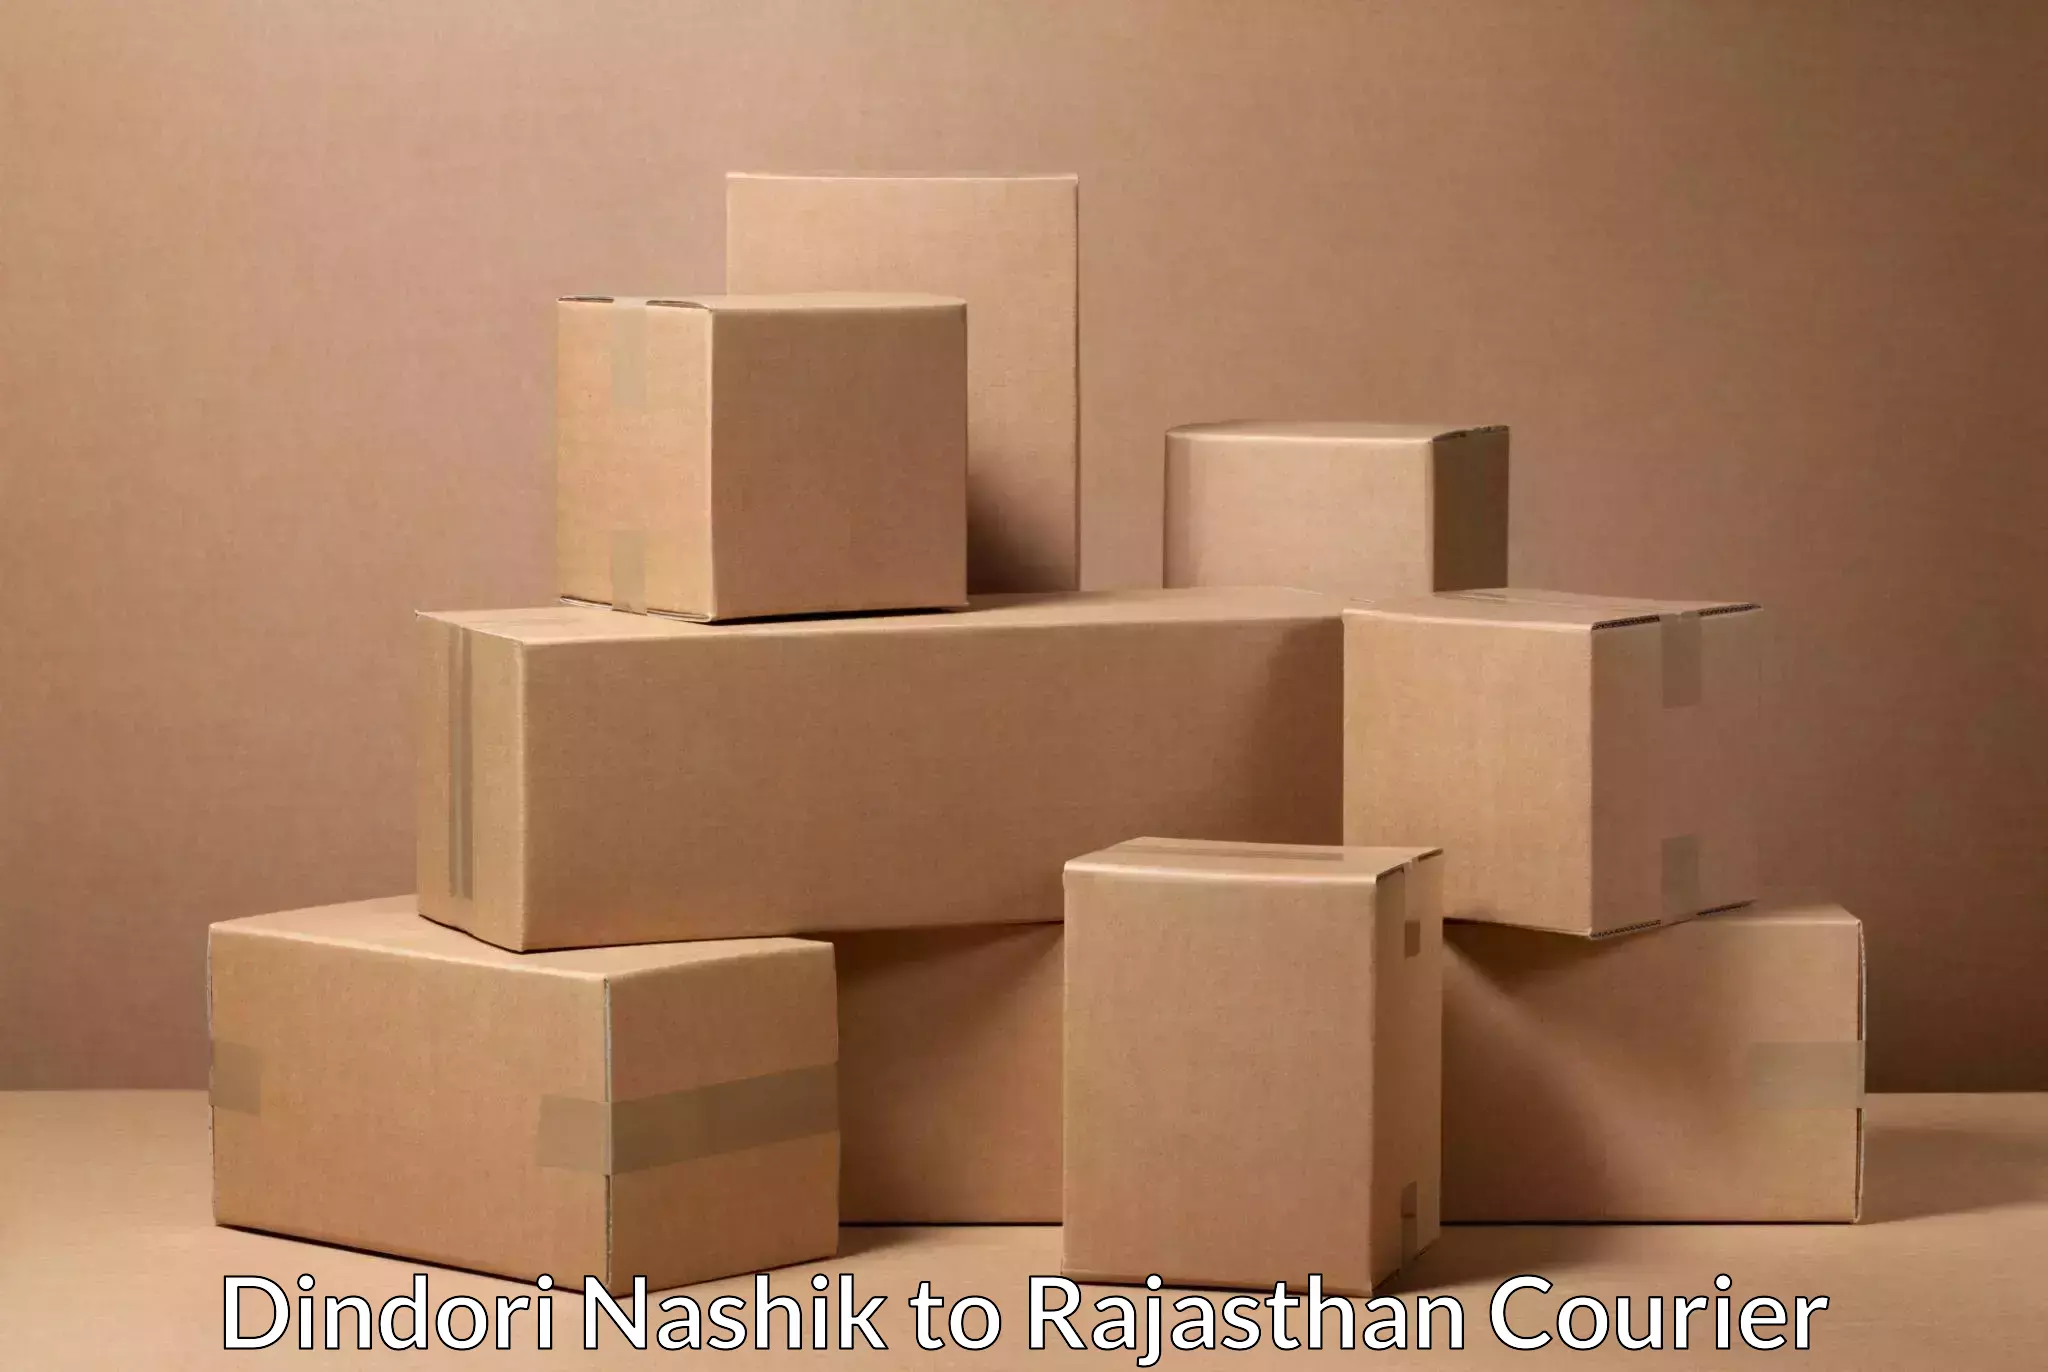 Efficient parcel tracking Dindori Nashik to Yeswanthapur